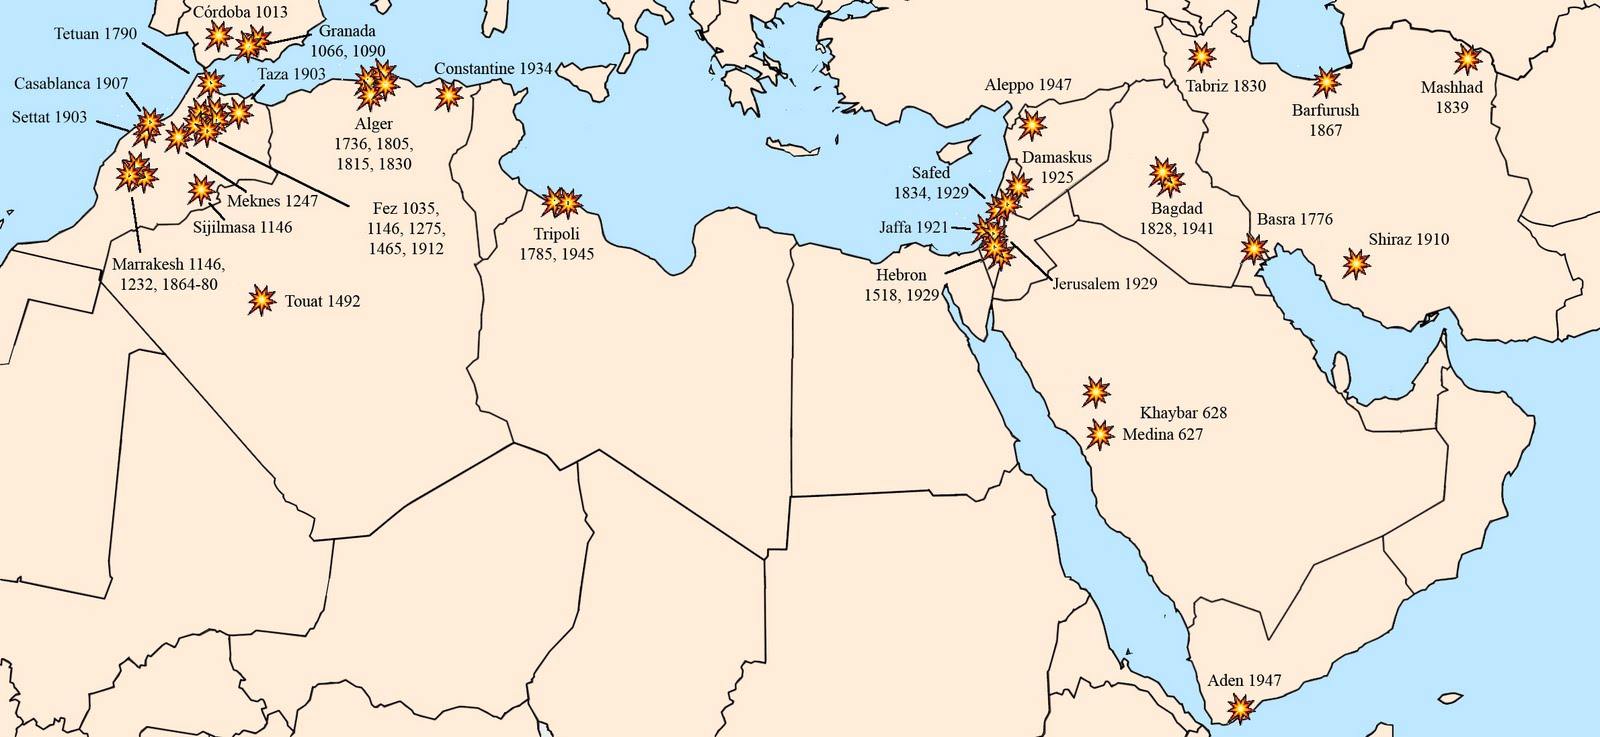 Χάρτης: Σφαγές και πογκρόμ Εβραίων χωρίς τις περιπτώσεις 'Λίβελος του Αίματος' [Torbjorn Karfunkel 2011]